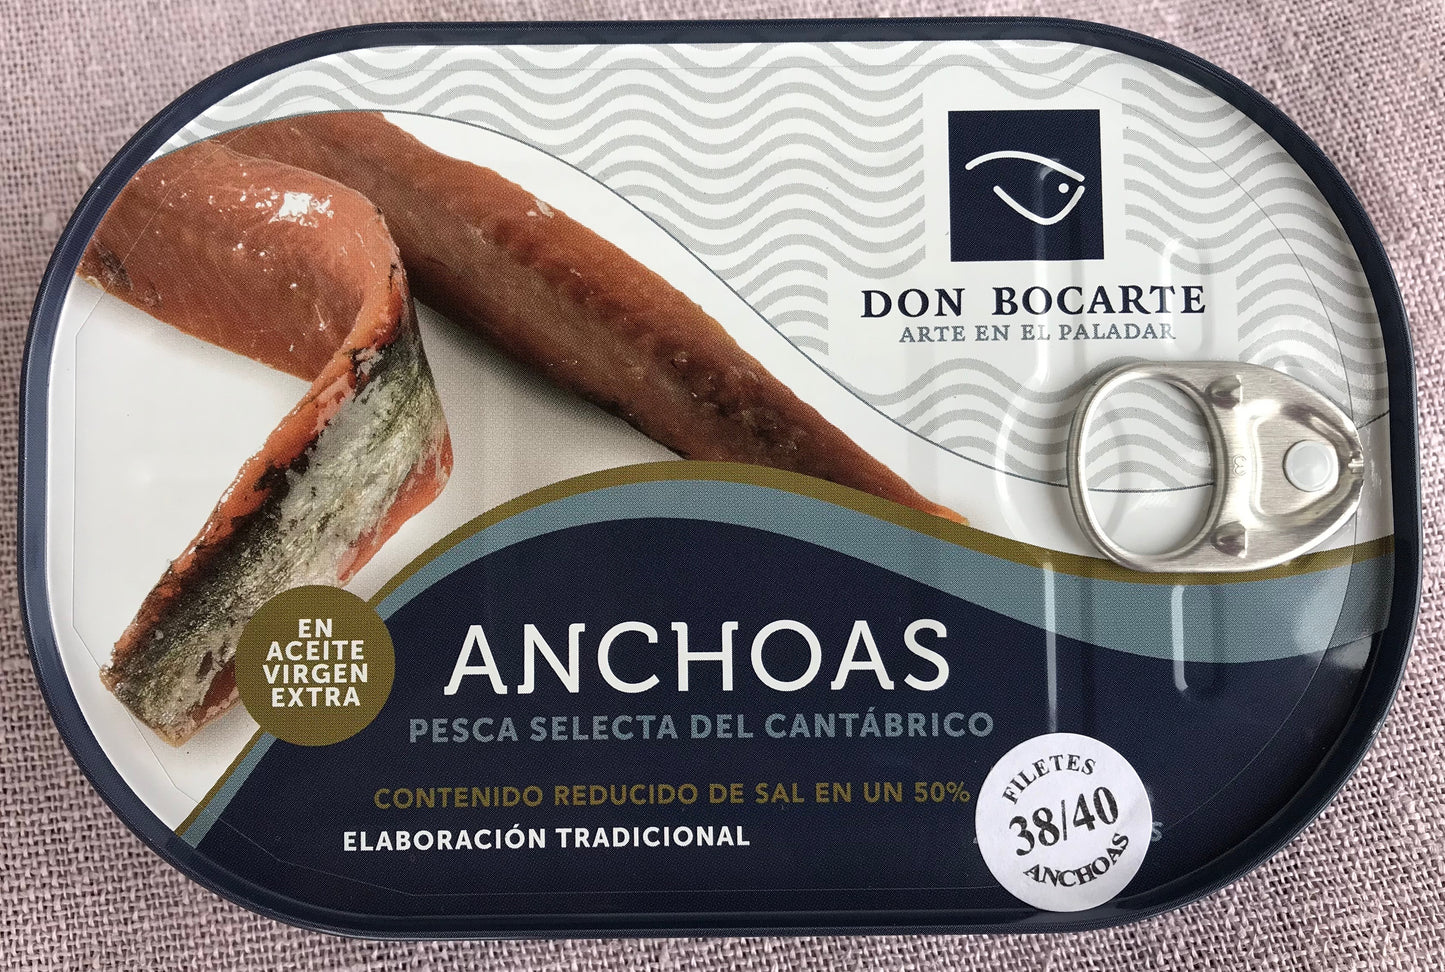 Anchoas Don Bocarte del Cantábrico en aceite de oliva. 38-40 filetes. Reducido en sal.